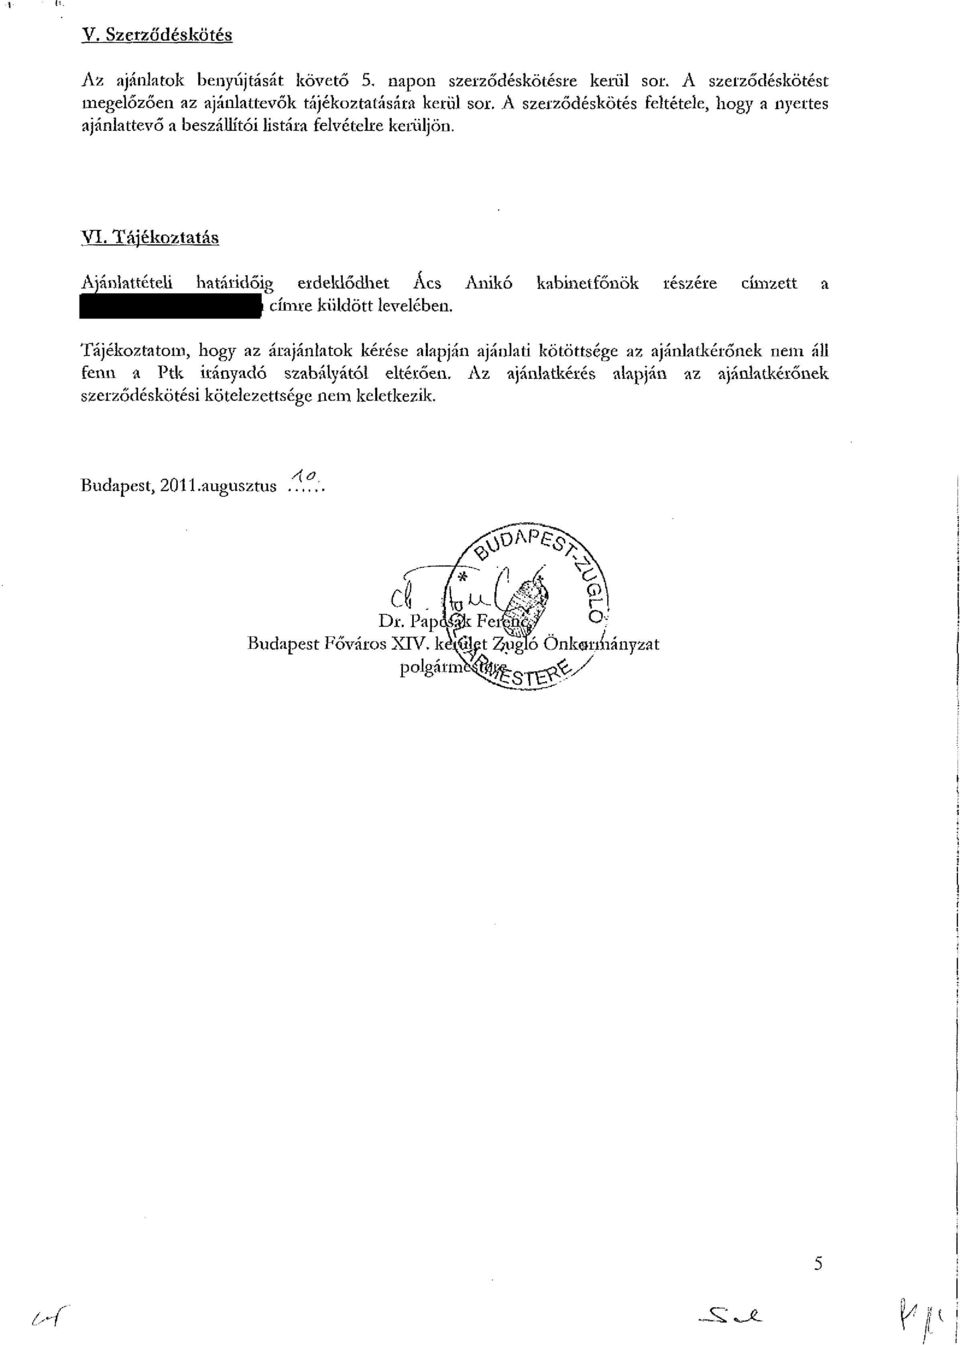 Tájékoztatás Ajánlattételi határidőig érdeklődhet Ács Anikó kabinetfőnök részére címzett a címre küldött levelében.